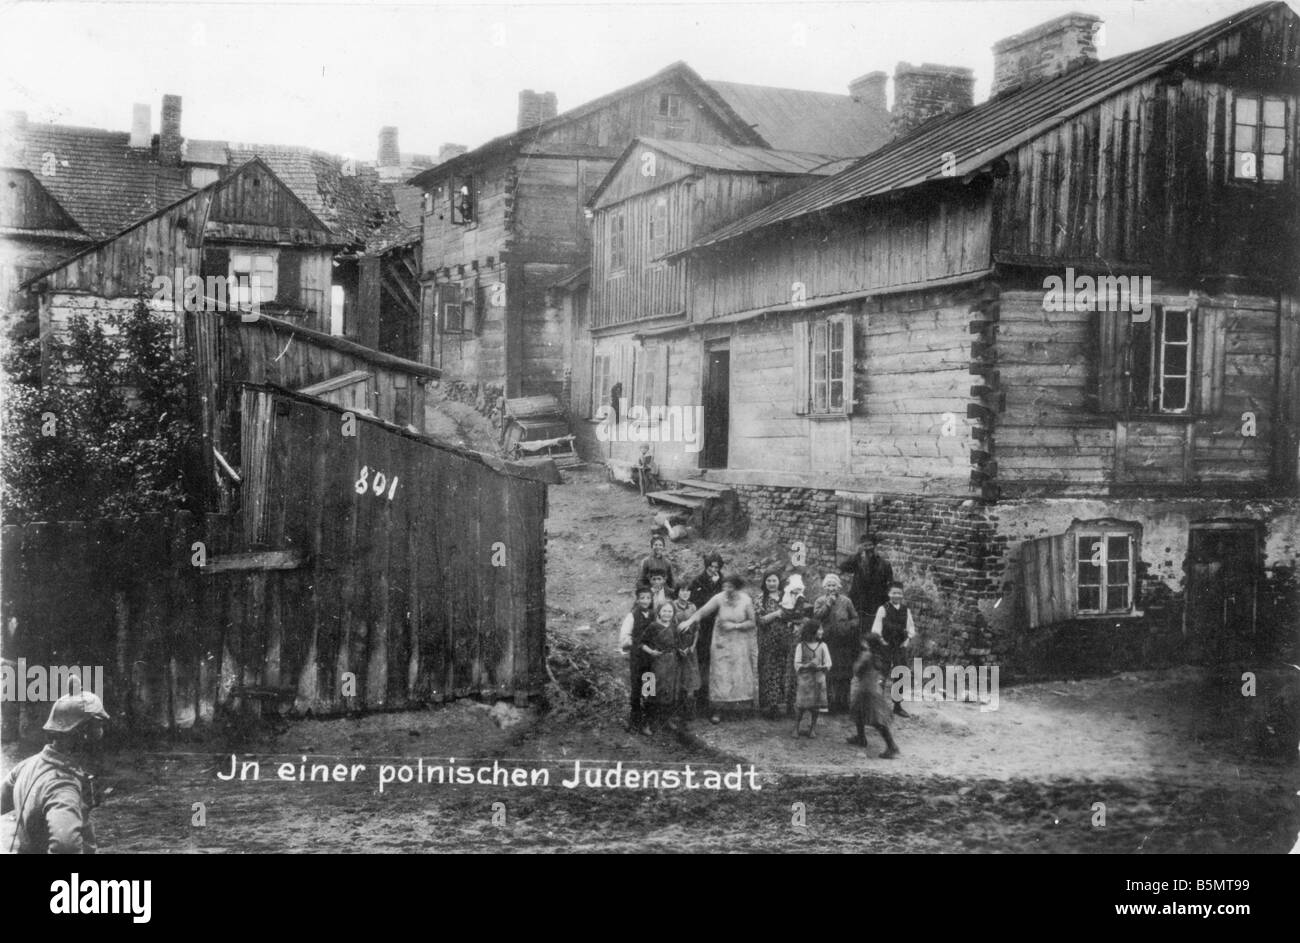 9Es 1915 0 0 A1 64 Ciudad Judía en Polonia Foto 1915 16 Historia de los judíos judíos orientales en einer polnischen Judenstadt en un poli Foto de stock